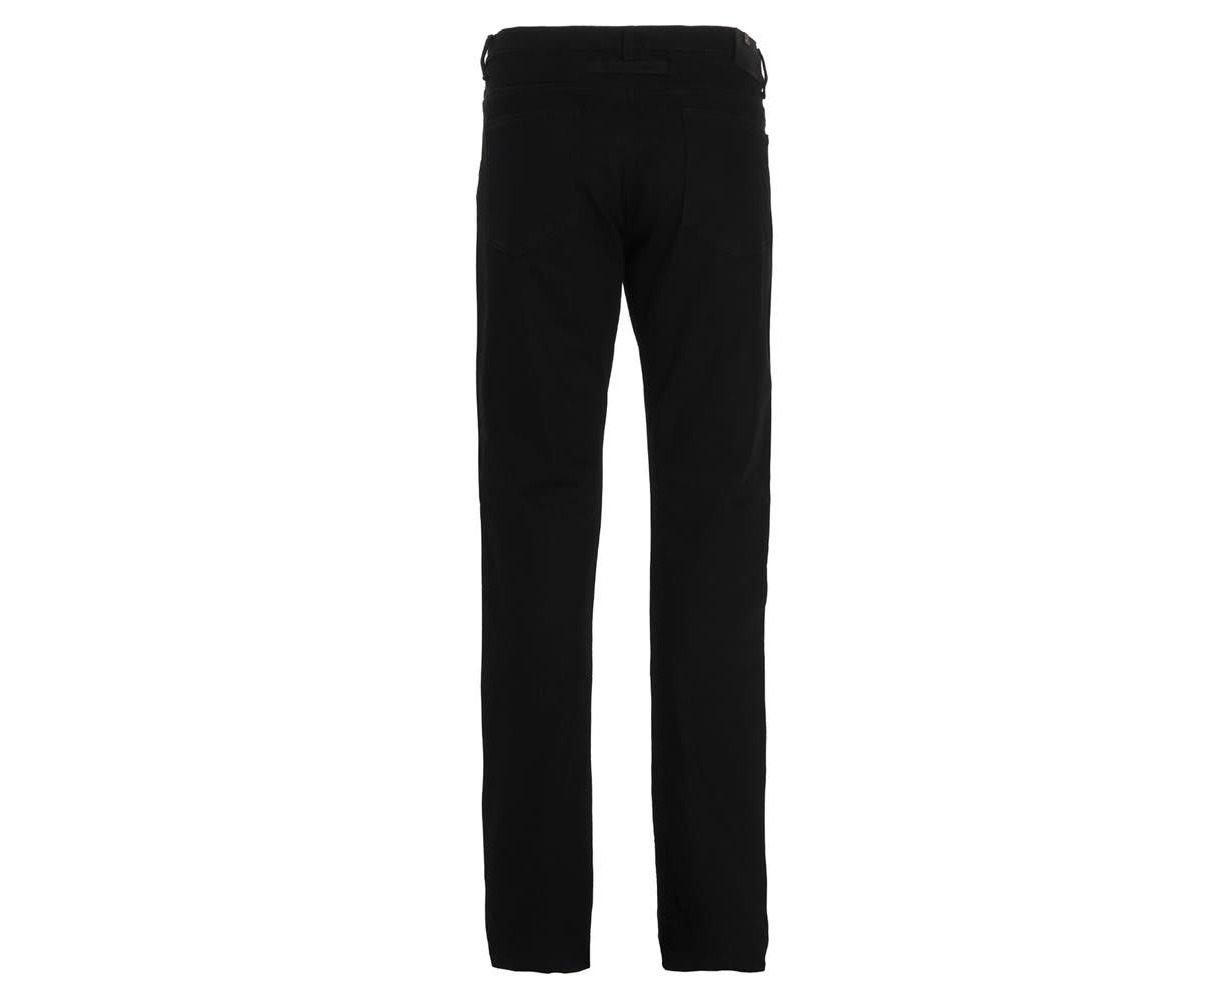 1017-alyx-9sm 1017 Alyx 9sm Men's Black Jeans | Catch.com.au